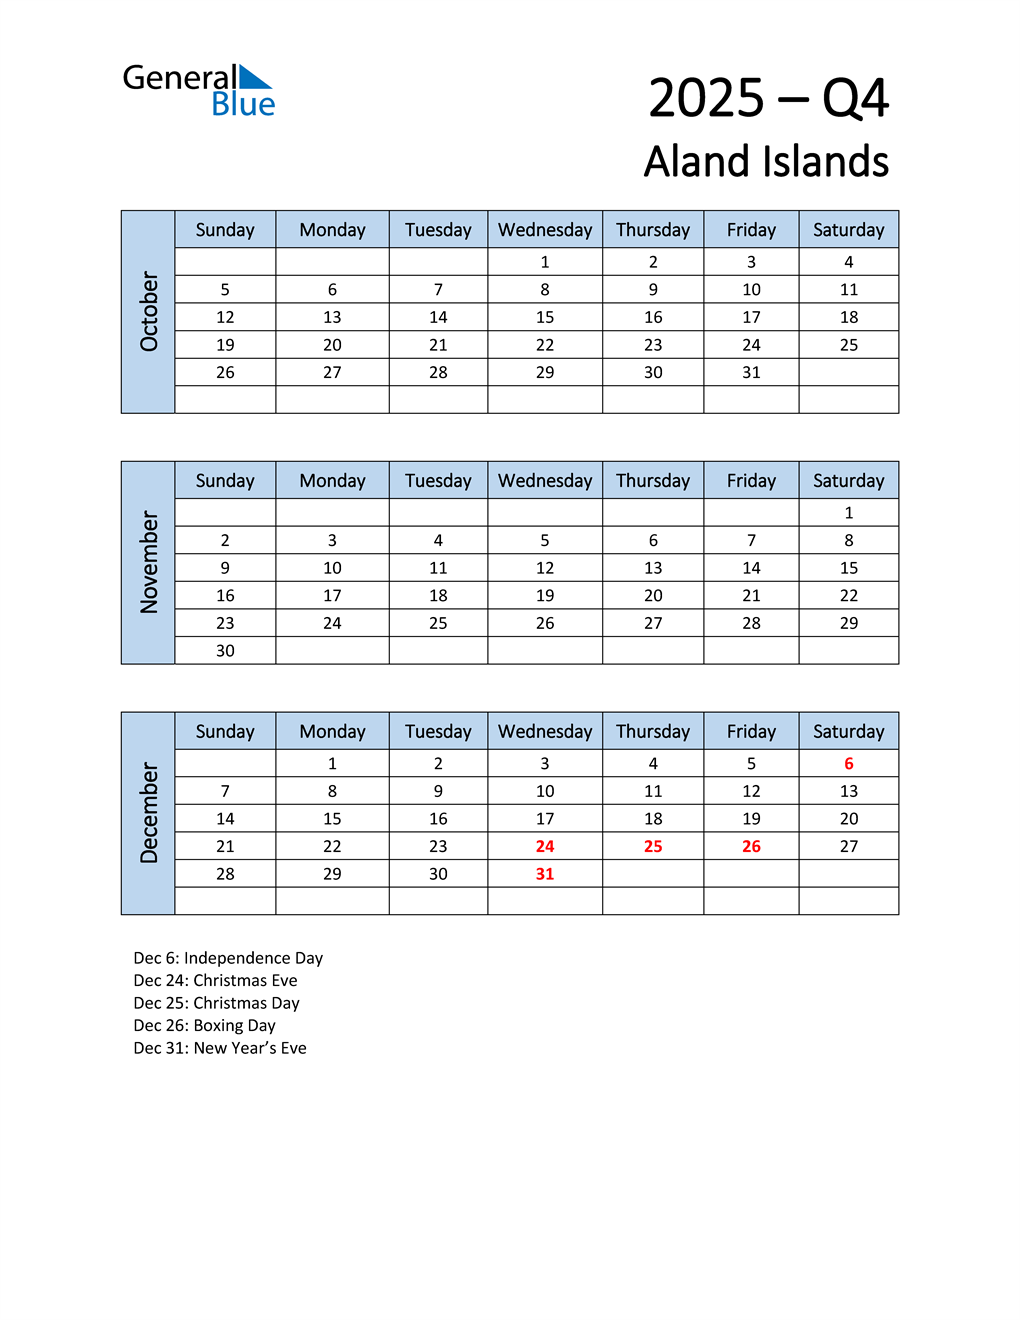  Free Q4 2025 Calendar for Aland Islands